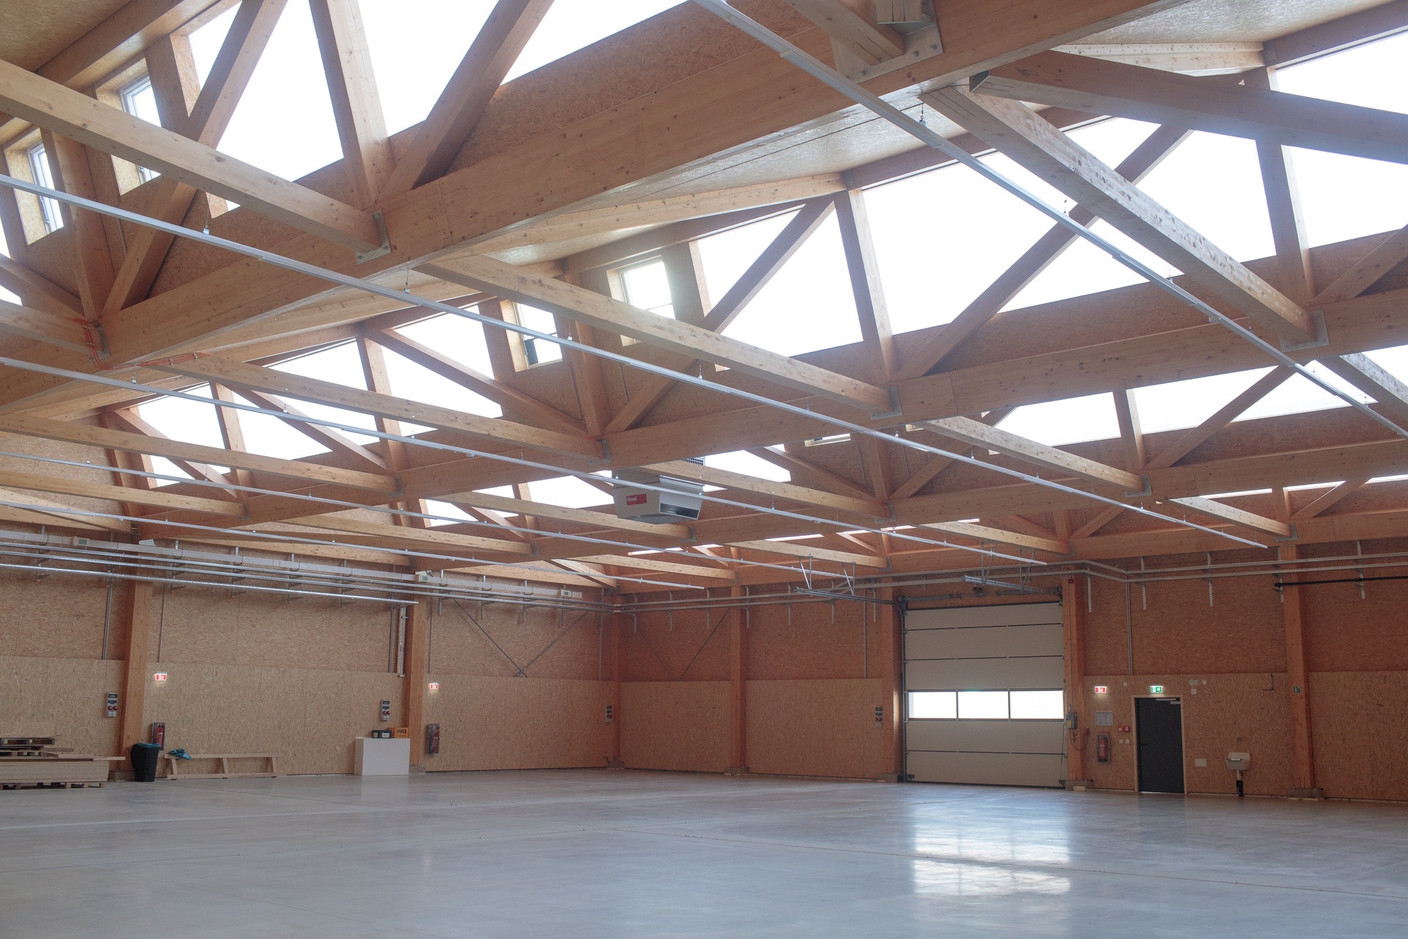 Les quatre sheds par hall ont une portée de 30 mètres pour un poids de 14 tonnes chacun. (Photo: Matic Zorman/Maison Moderne)